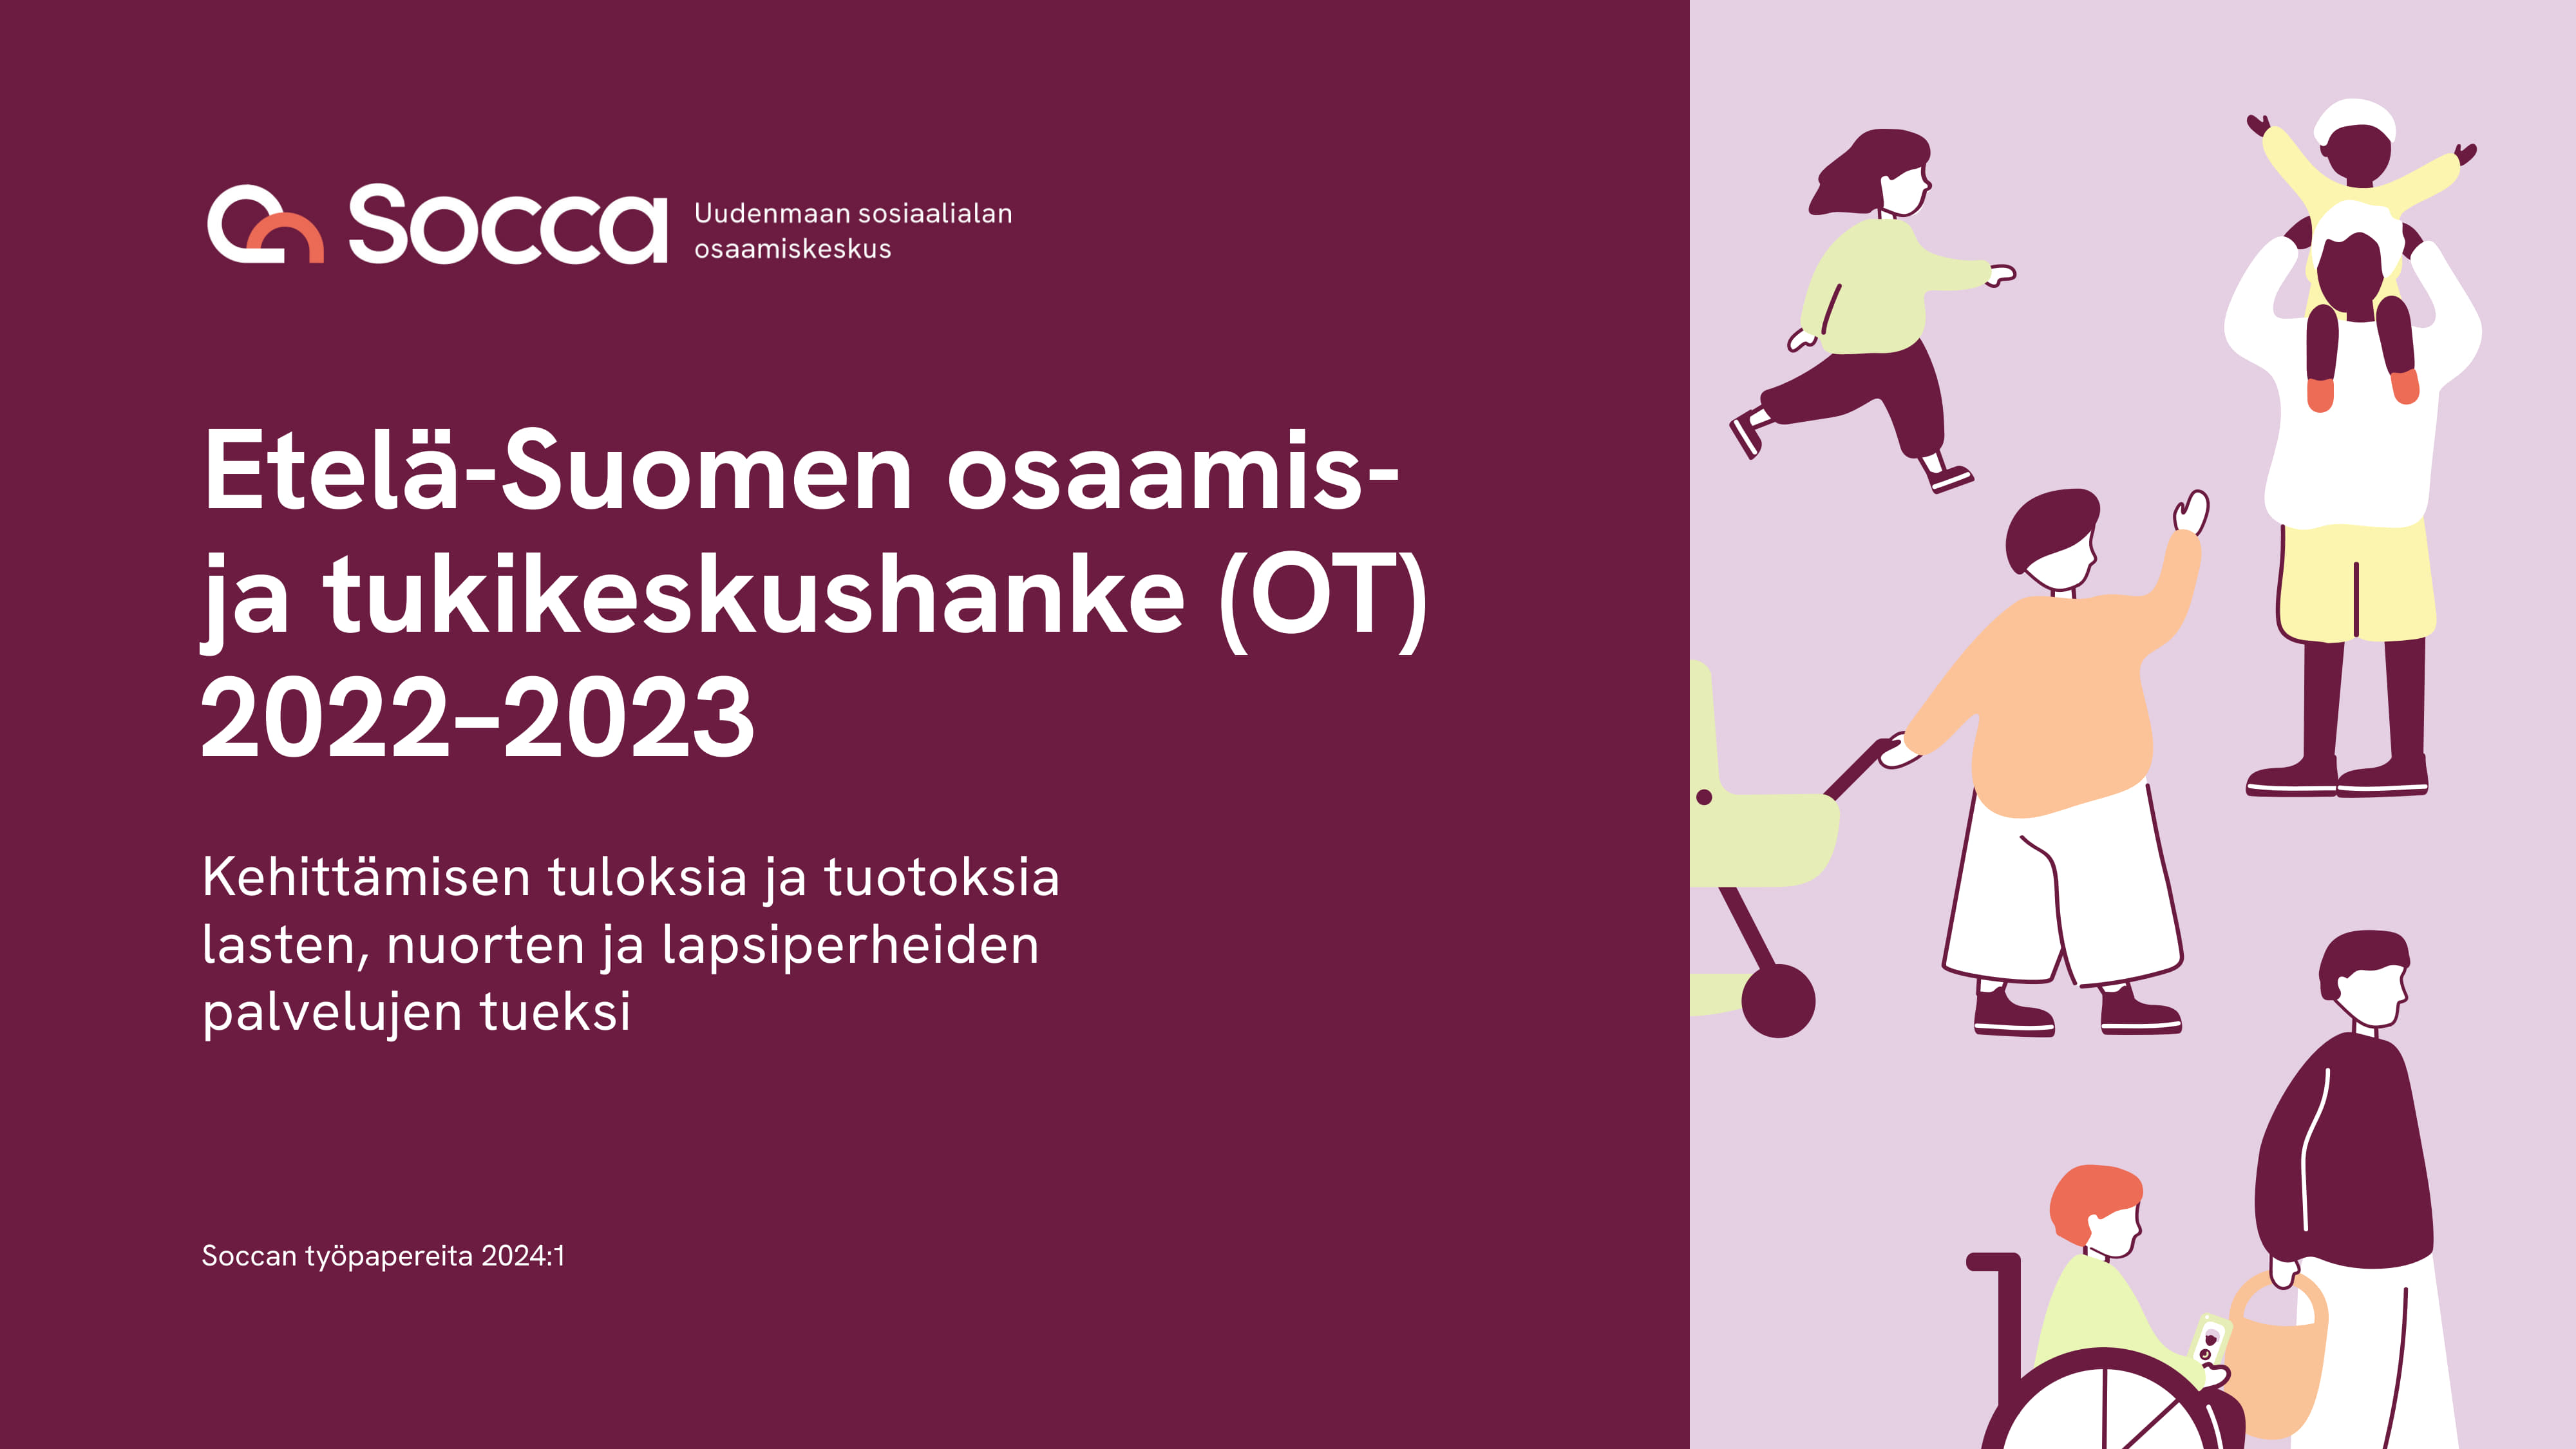 Etelä-Suomen OT-keskushankkeen 2022-2023 raportti